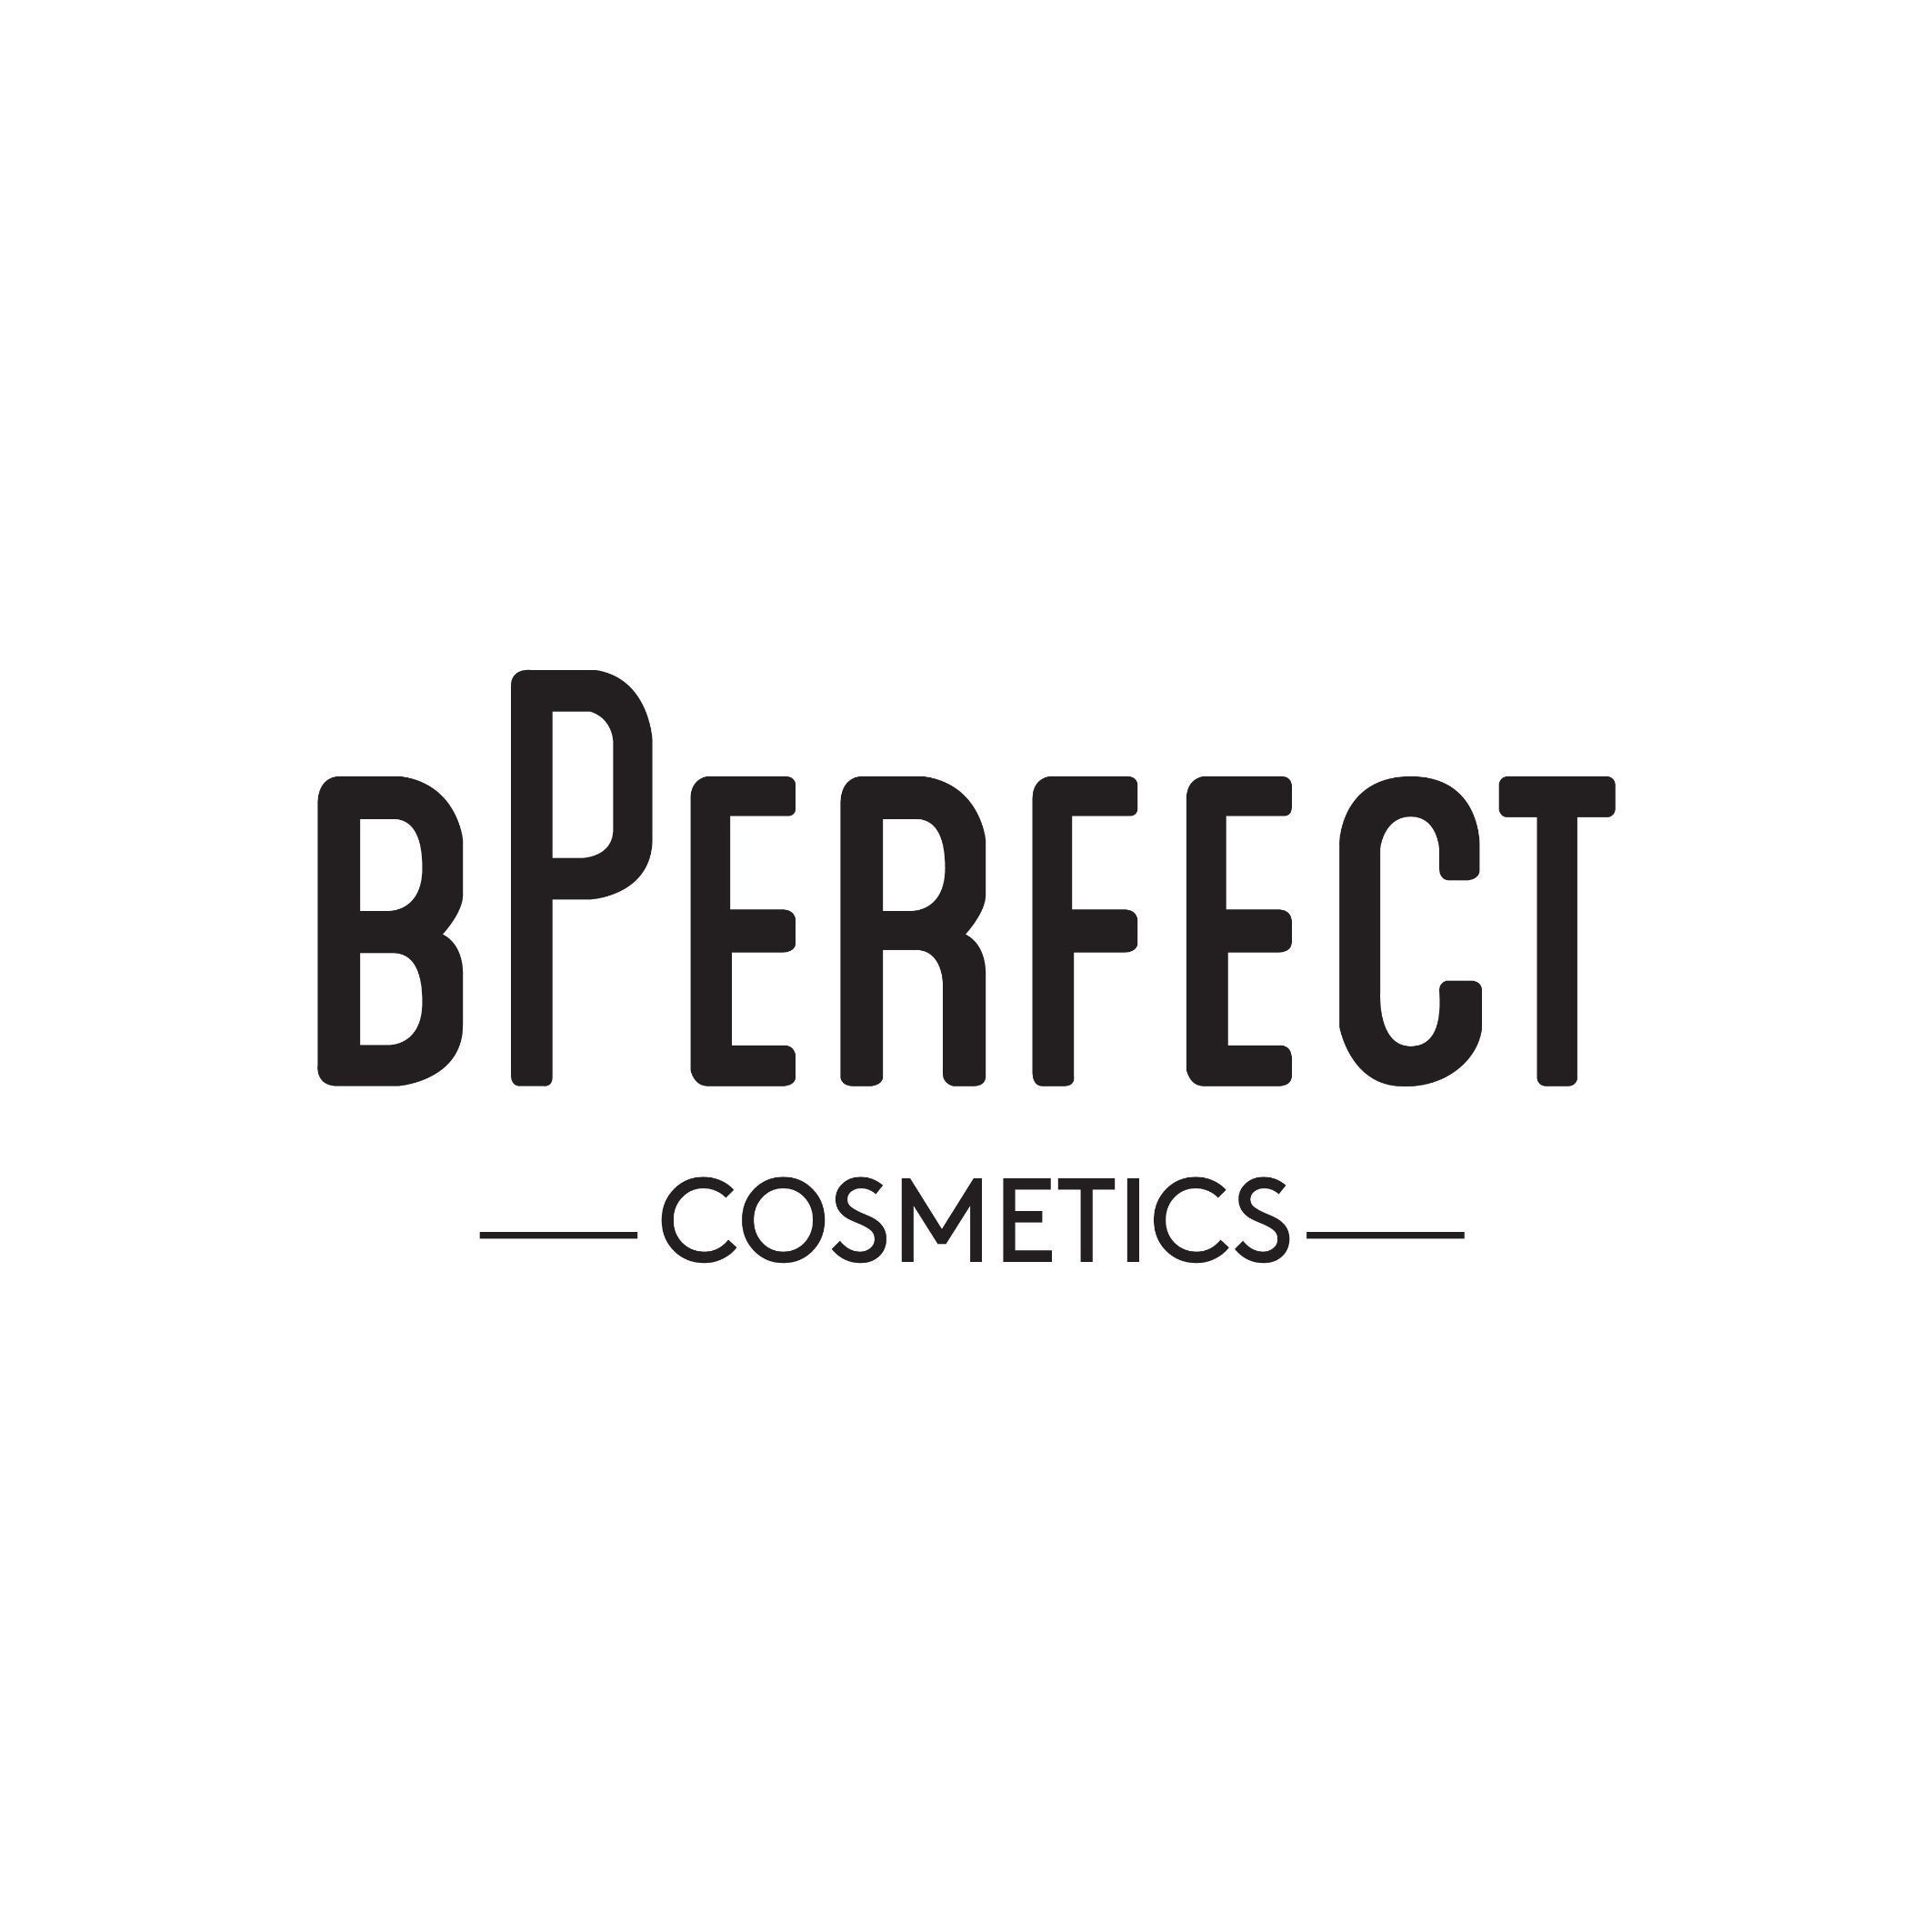 BPerfect Cosmetics Letterkenny, BPerfect, Letterkenny Shopping Centre, Port Road, Letterkenny